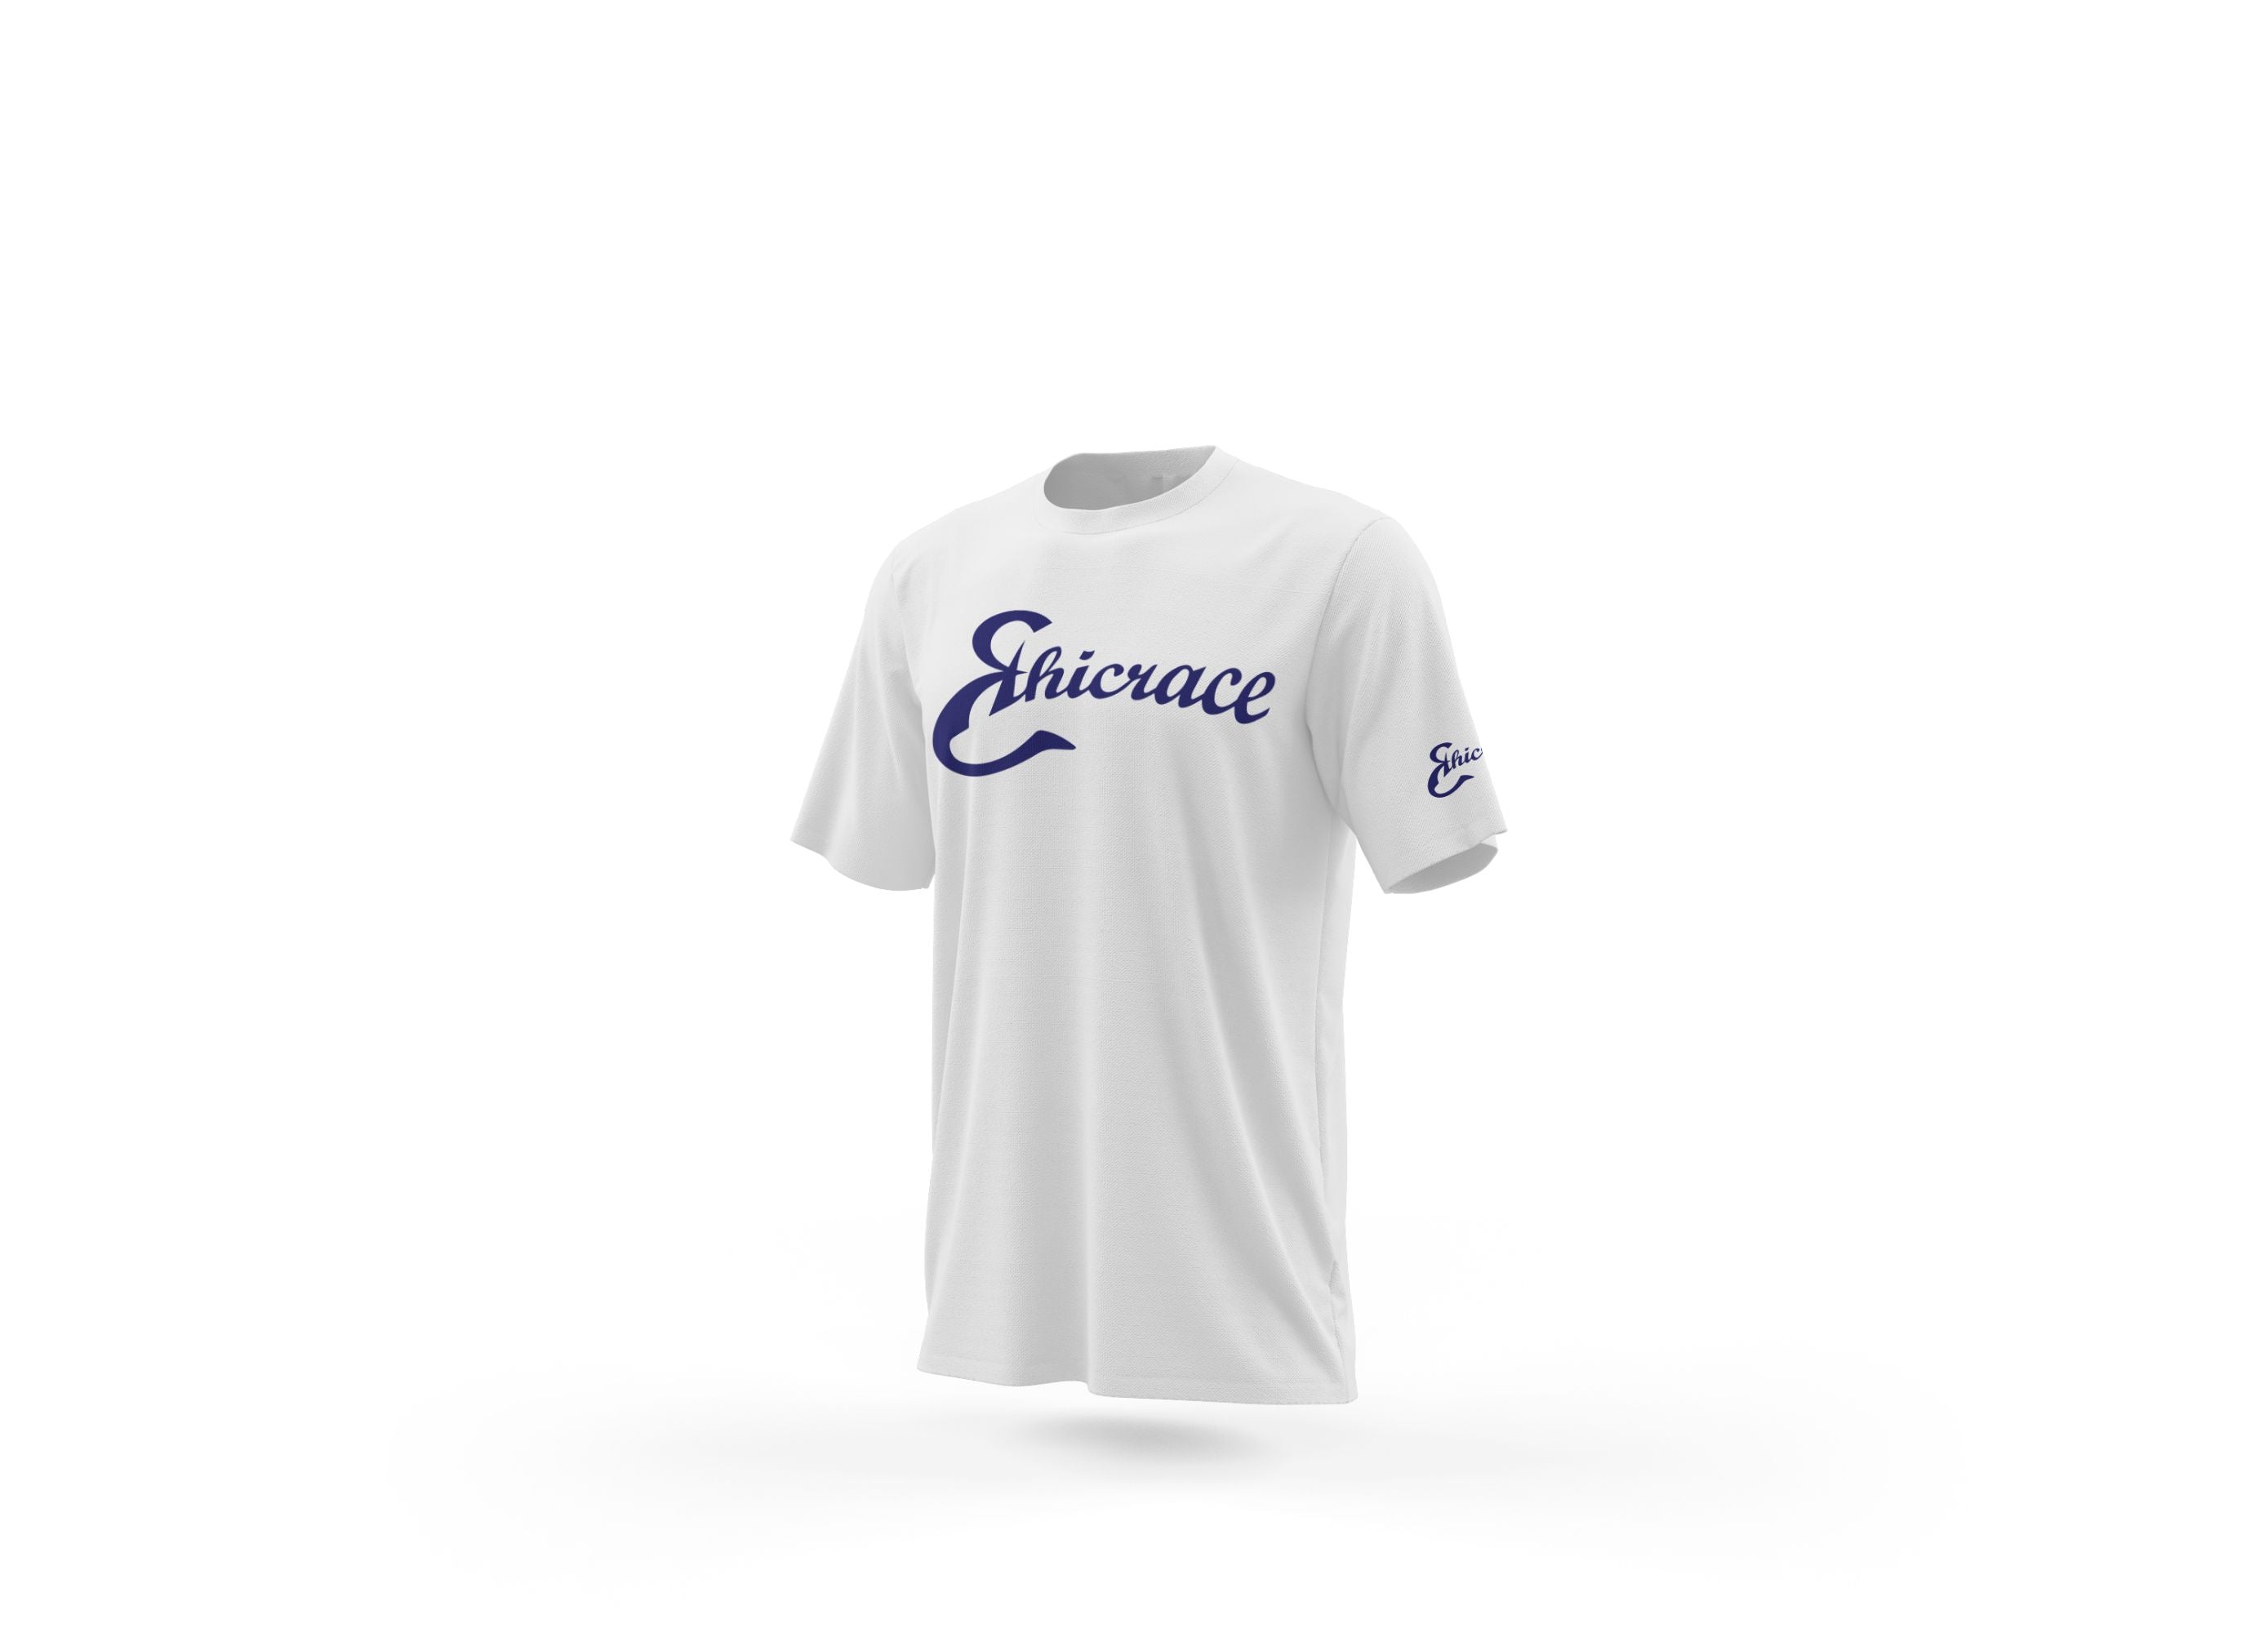 Ethicrace Cursive Logo Shirt for Men (White/Navy)